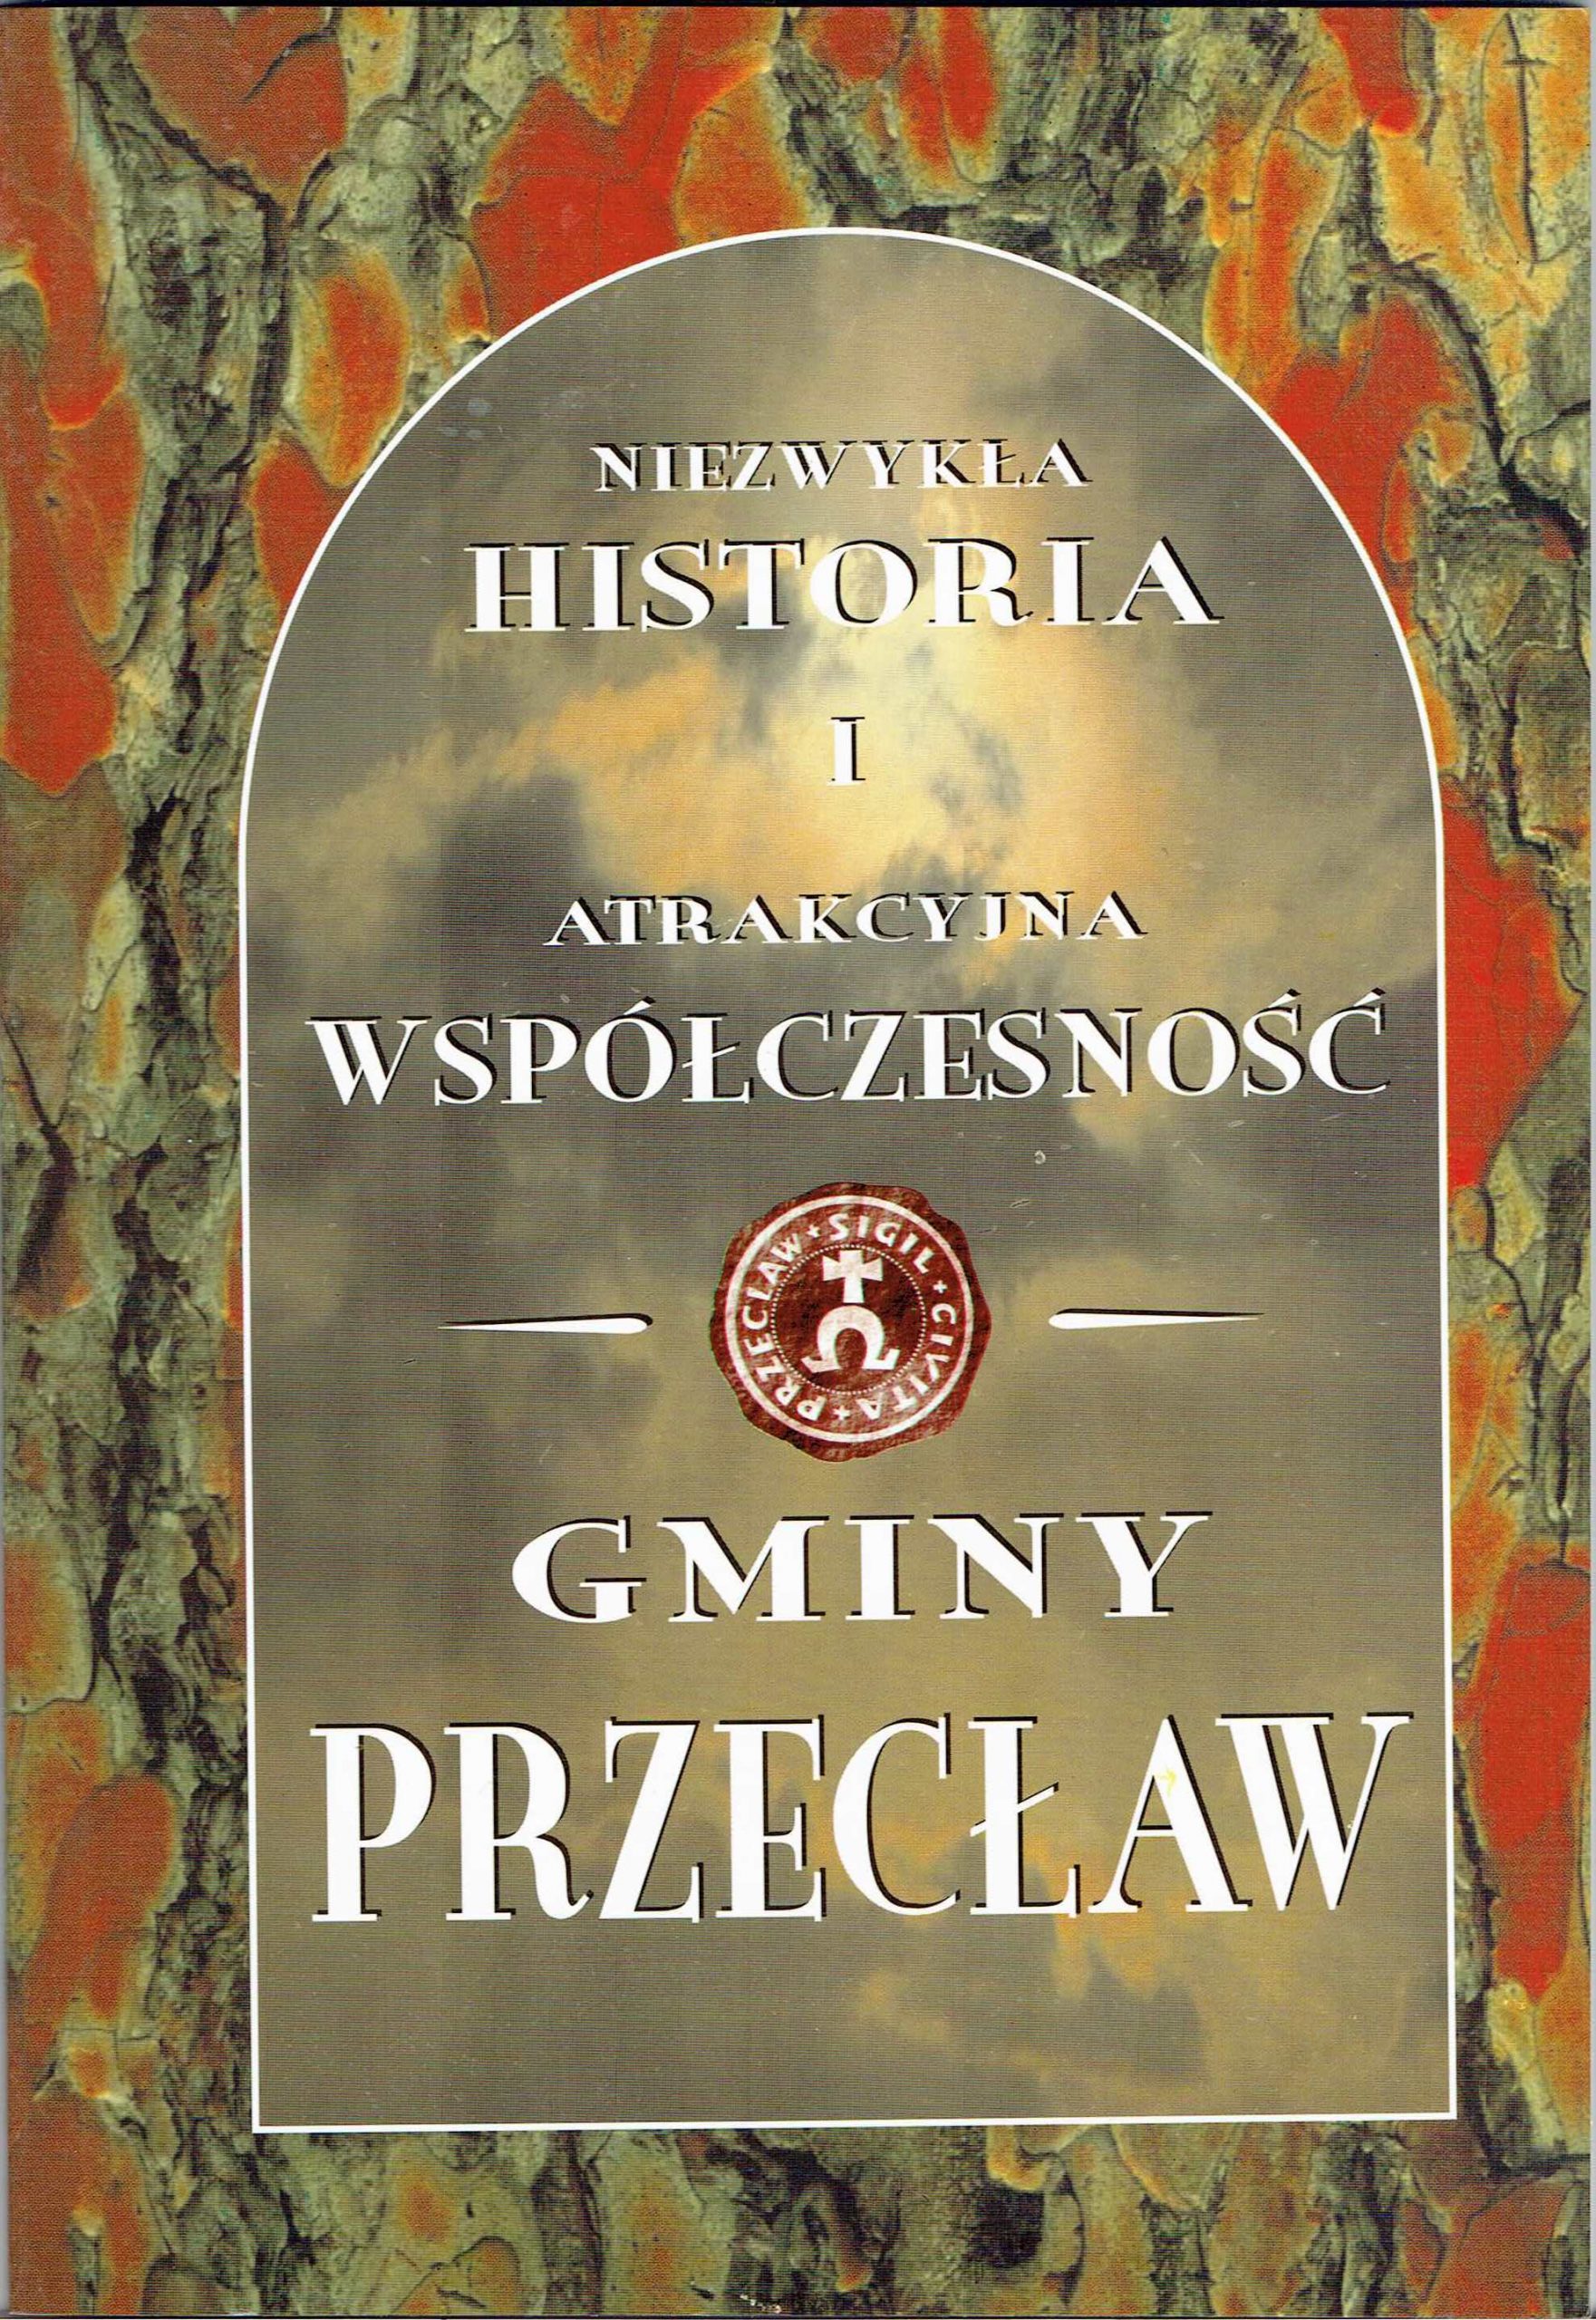 Niezwykła historia i atrakcyjna współczesność gminy Przecław